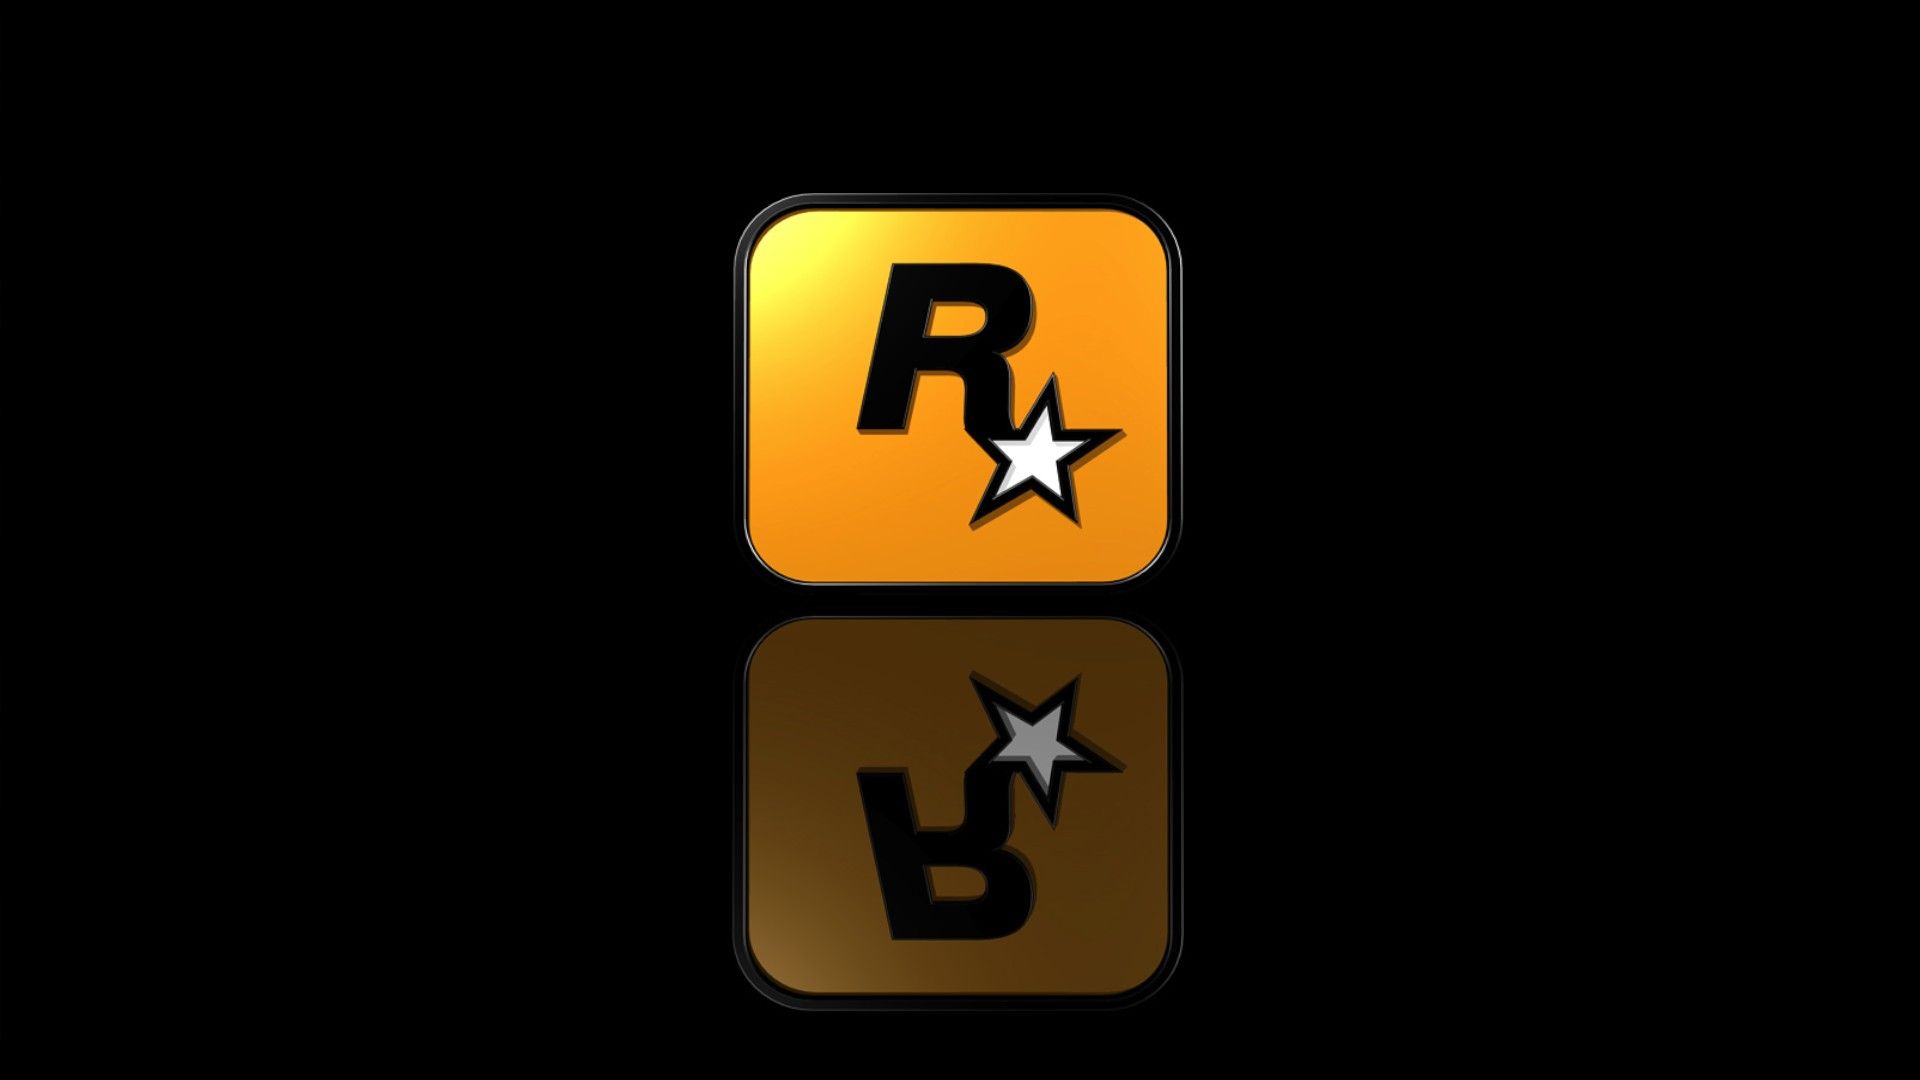 Rockstar Logo Wallpaper